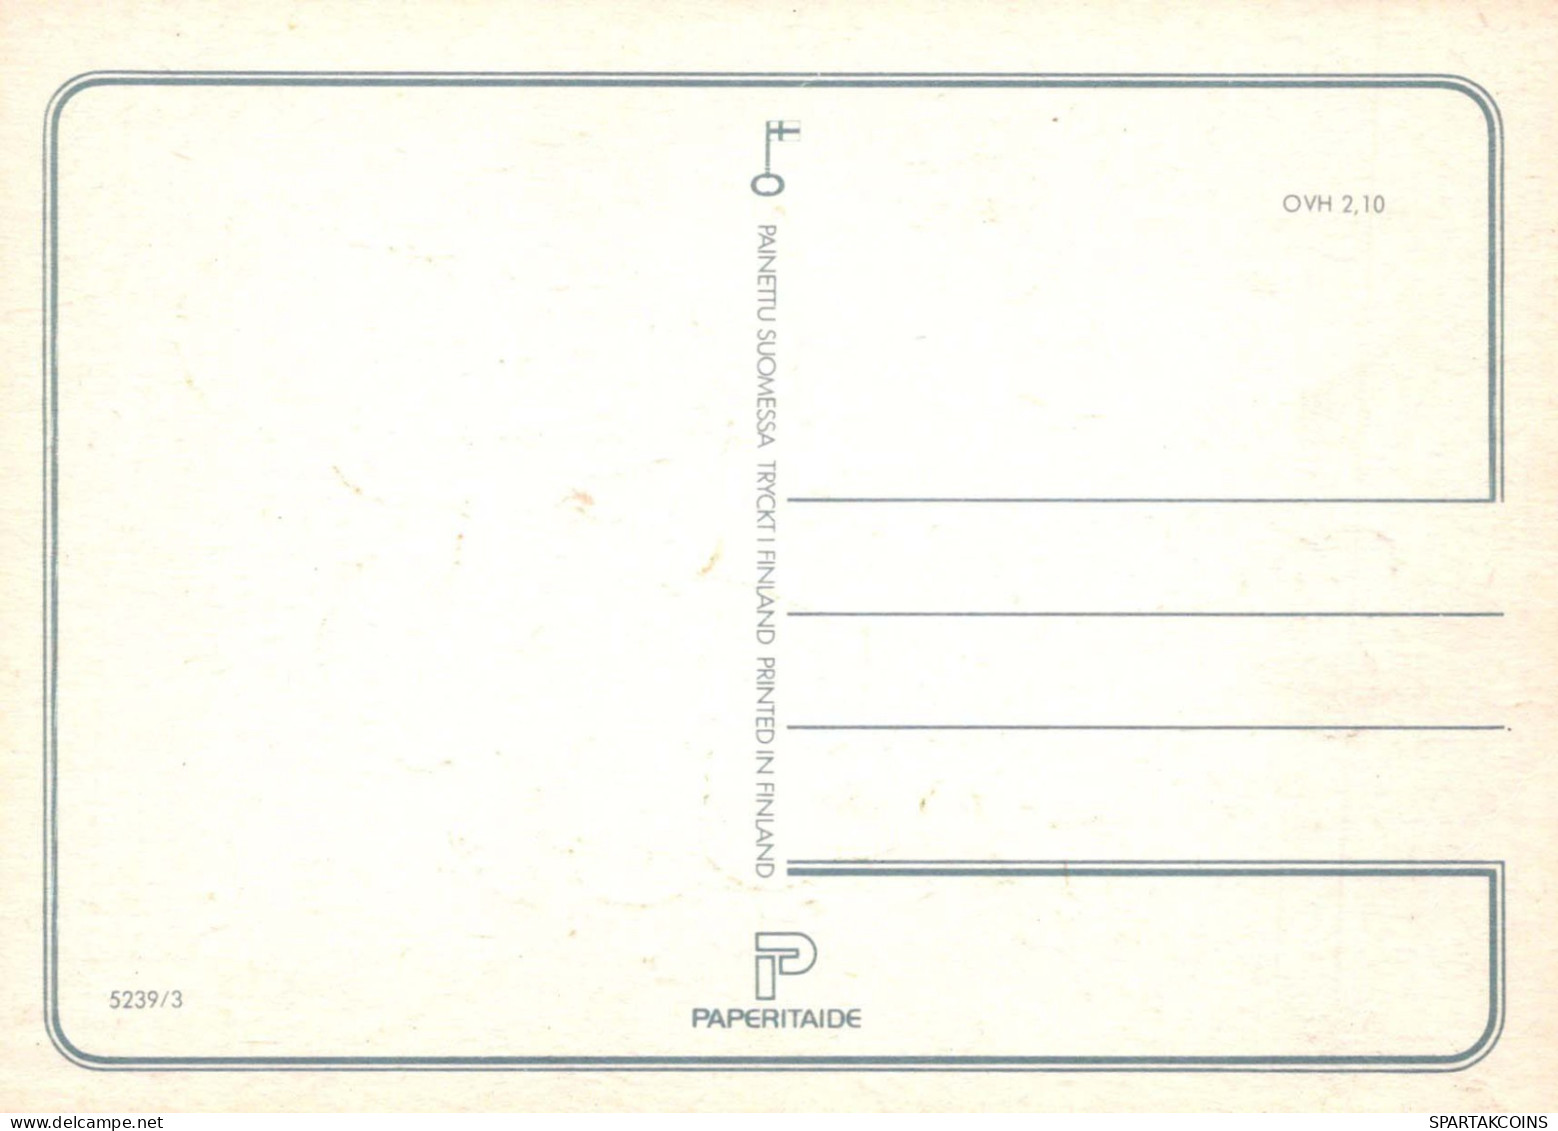 NIÑOS NIÑOS Escena S Paisajes Vintage Tarjeta Postal CPSM #PBU540.ES - Scenes & Landscapes